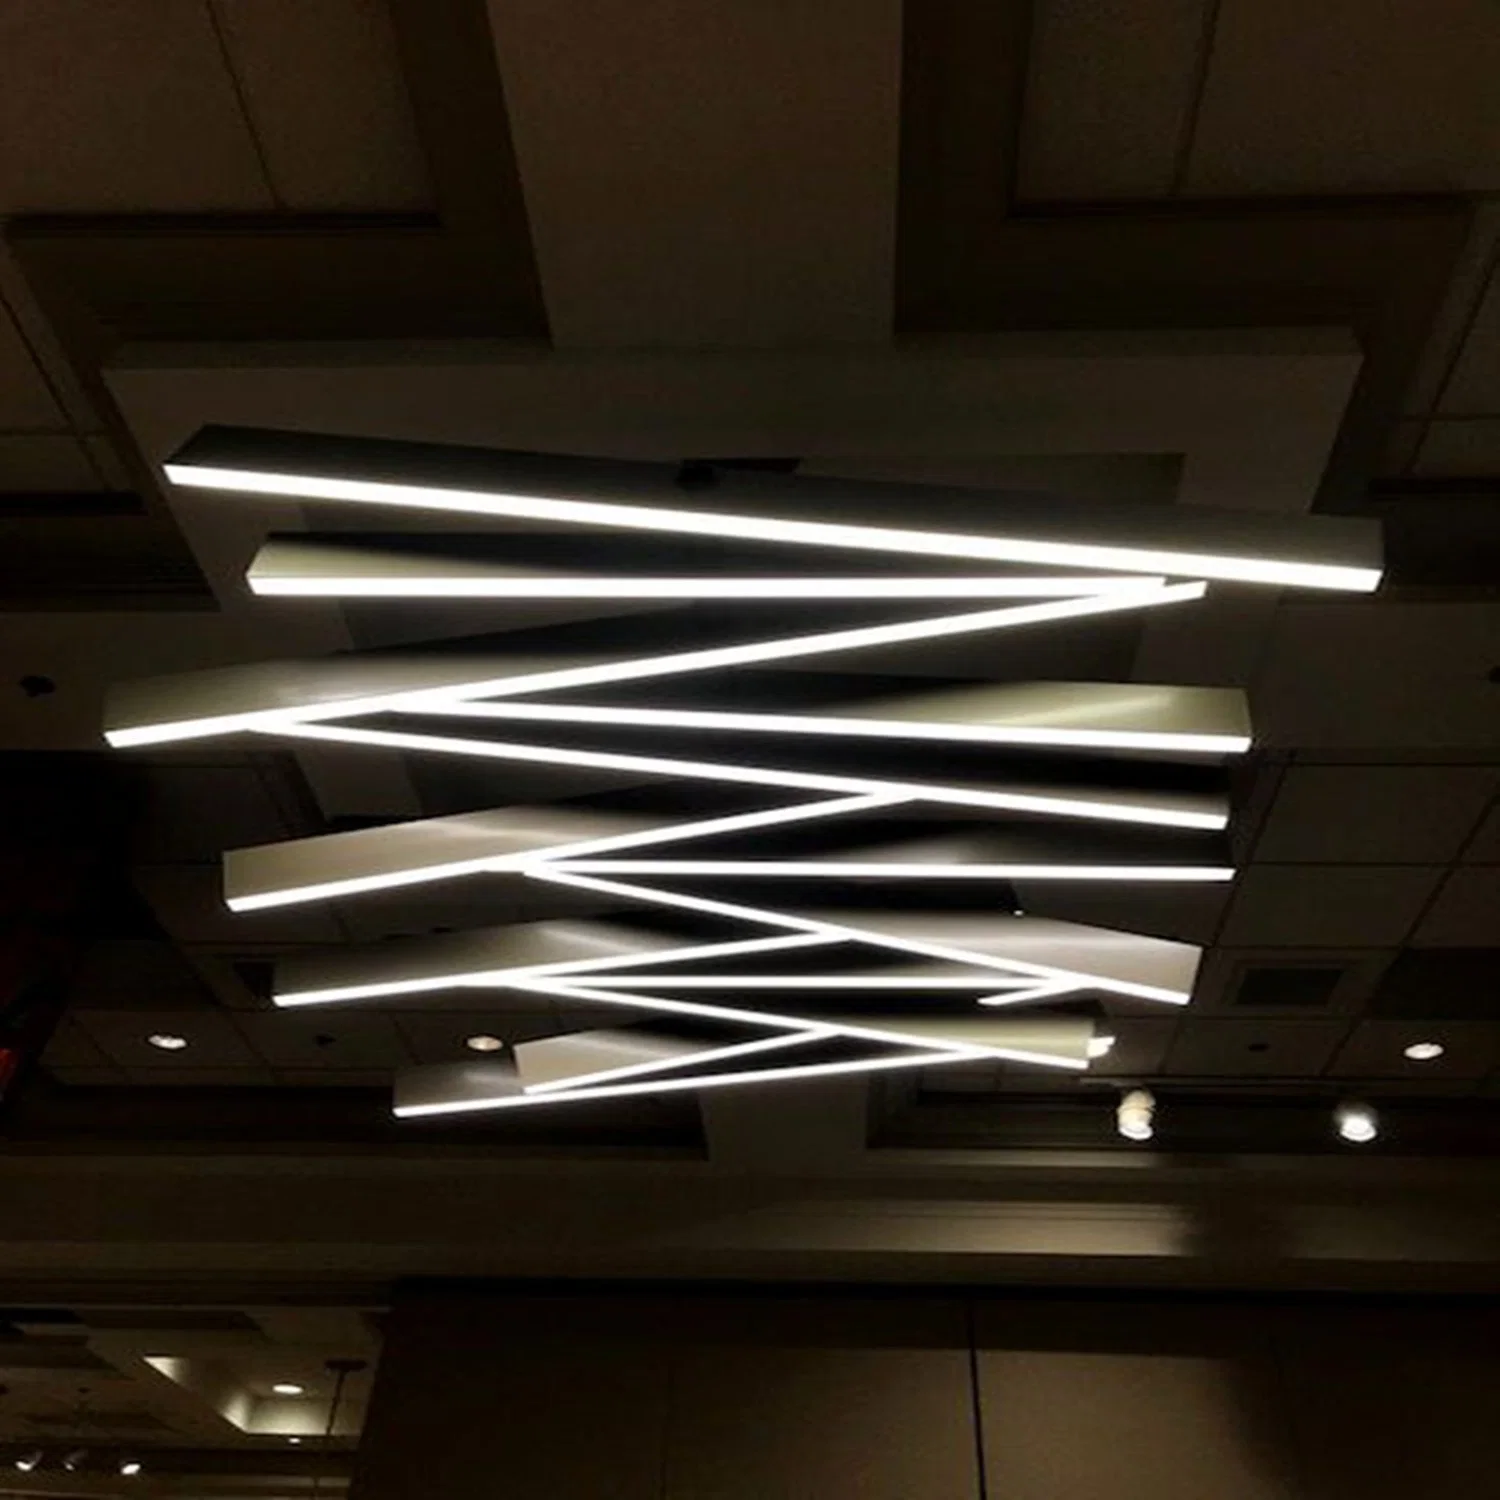 A intensidade de luz Linear Inground Conexão do perfil de alumínio Office lustre de iluminação